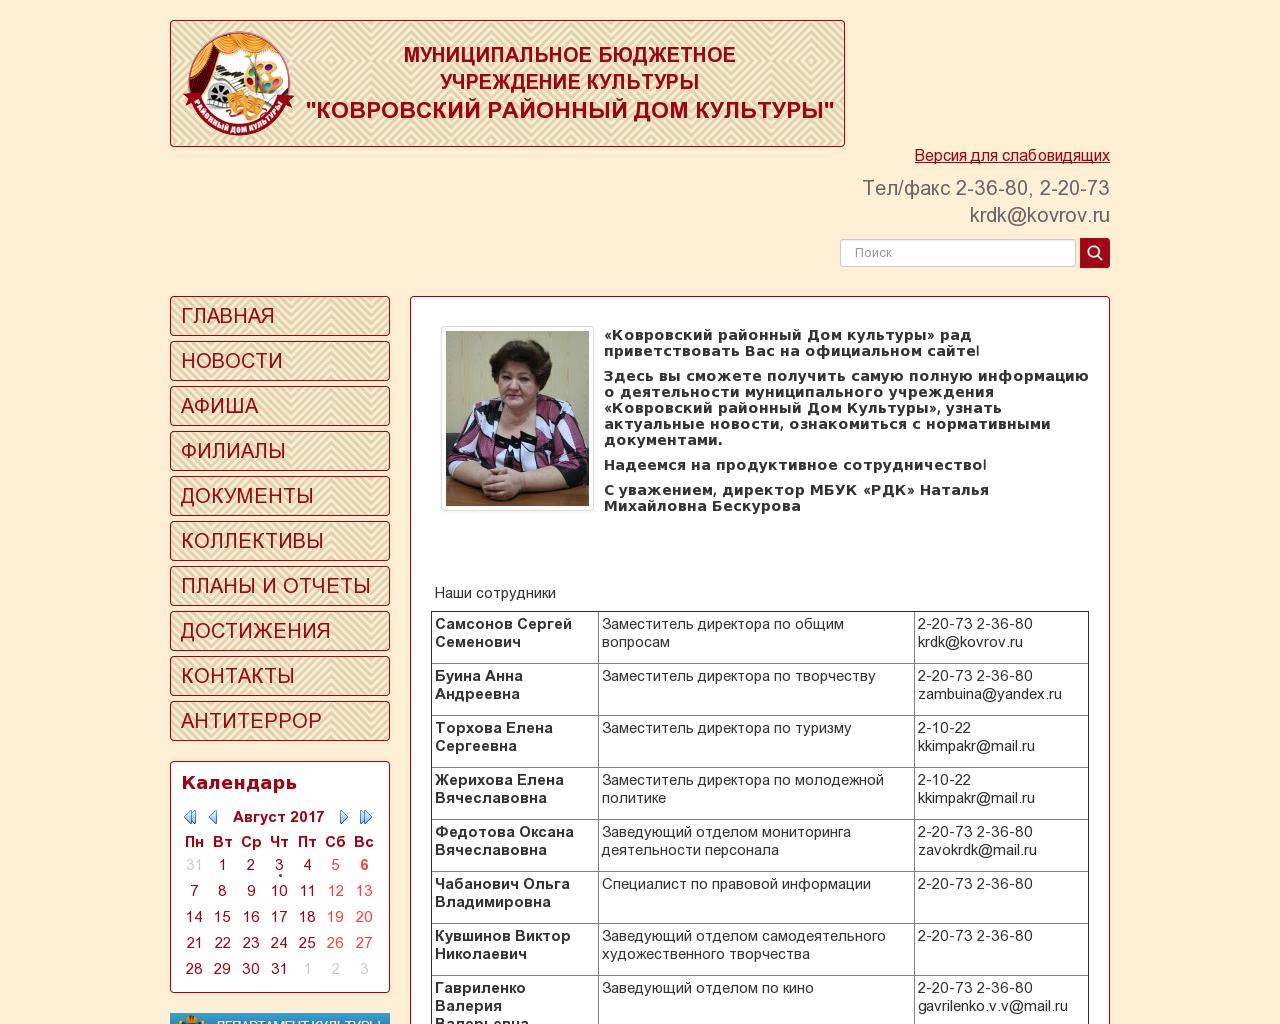 Изображение сайта krdk.ru в разрешении 1280x1024